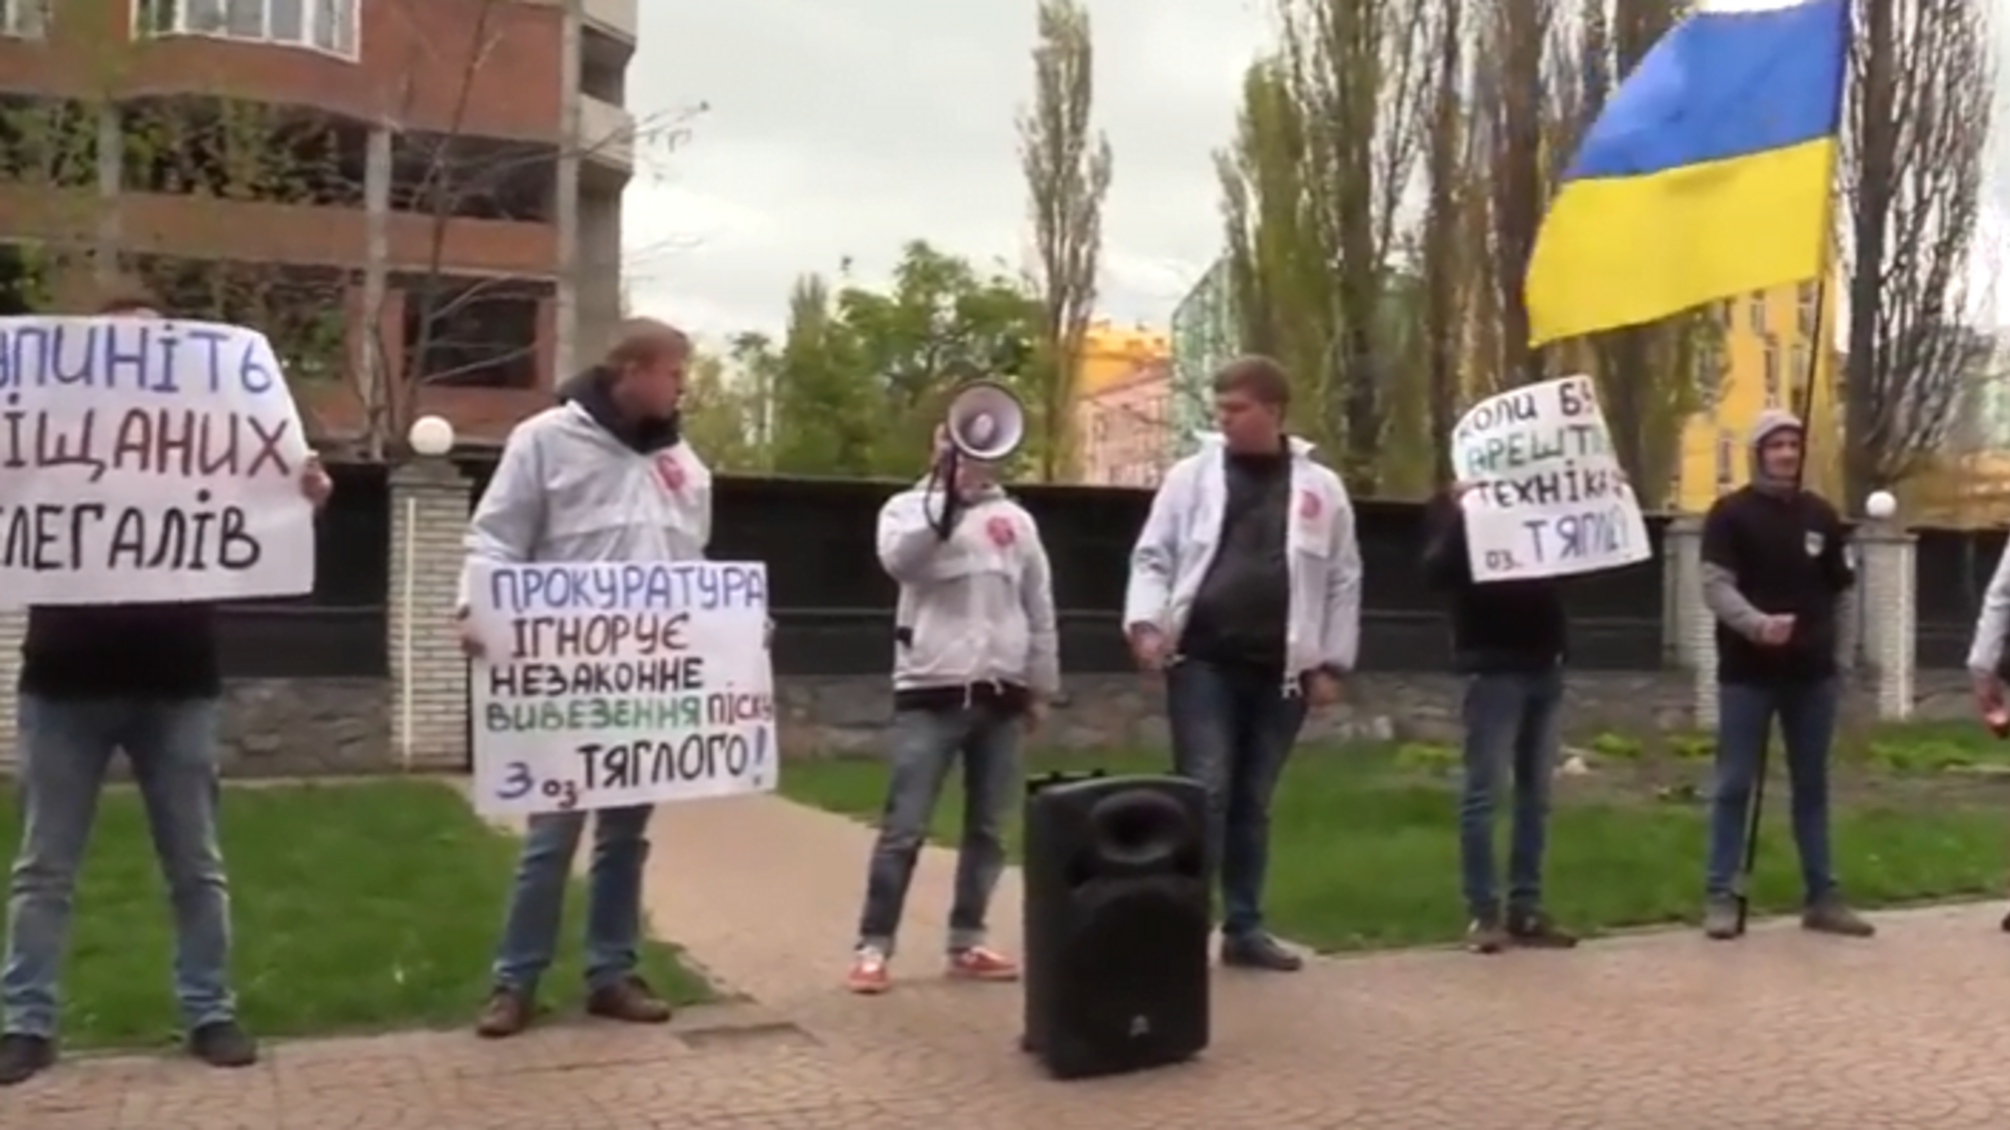 У прокуратурі Дарницького району столиці забарикадувались від 'СтопКору', активістів прийняли за терористів